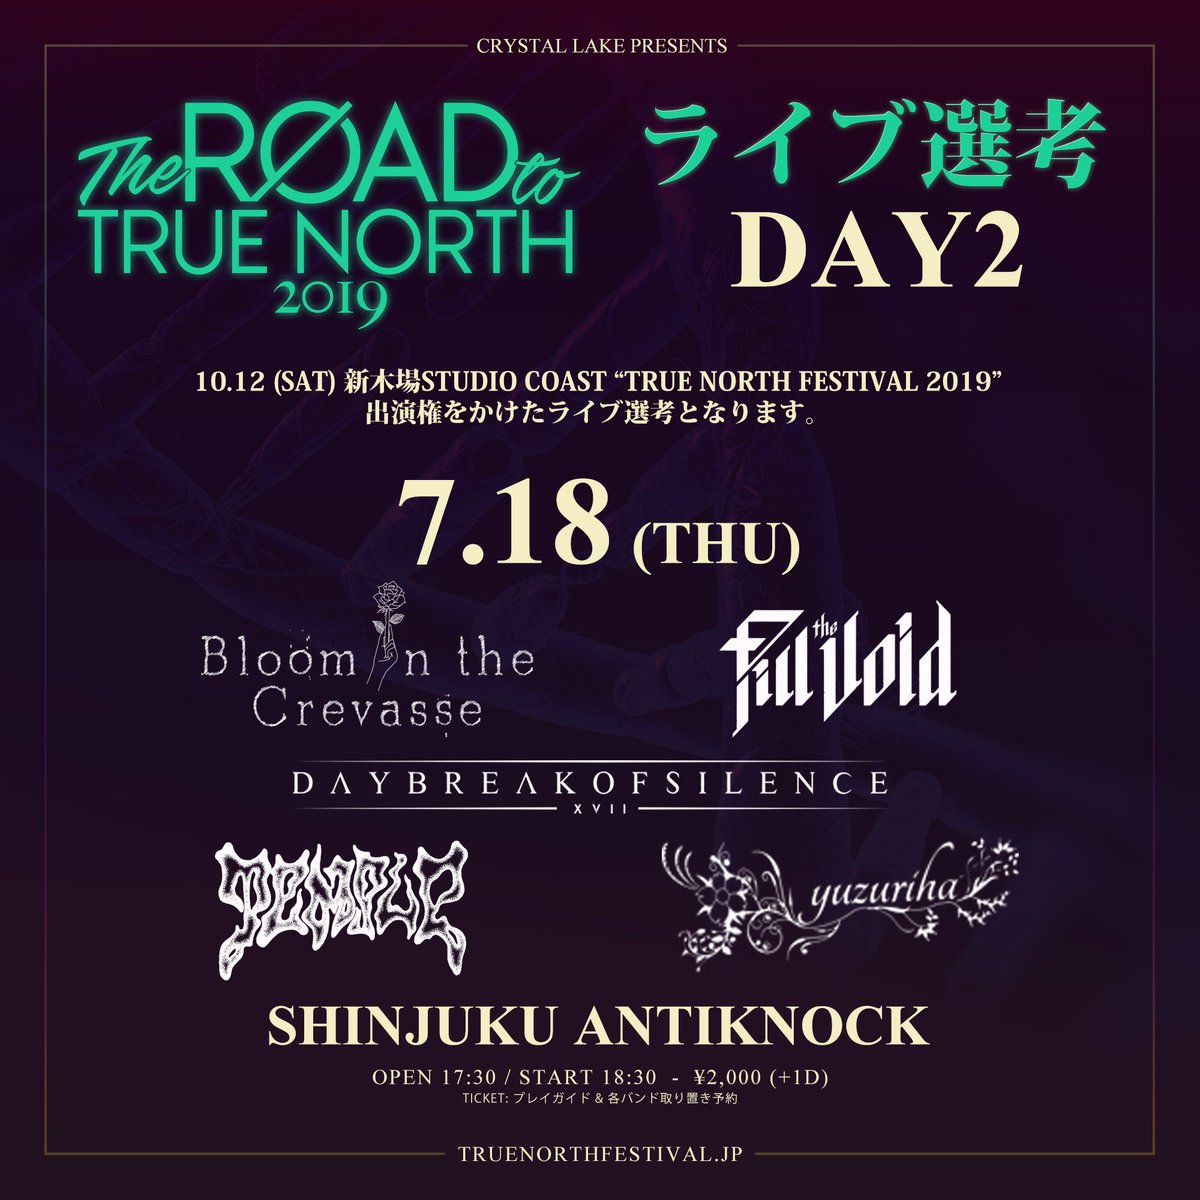 TEMPLEで、CRYSTAL LAKE主催The ROAD to TRUE NORTH 2019に出演決定！
ハチャメチャポコポコ丸になるっぺお！
平日やけど、お時間ある方は是非参拝しに来てください。
大阪からも、待っています。

#TEMPLE #CRYSTALLAKE #TheROADtoTRUENORTH